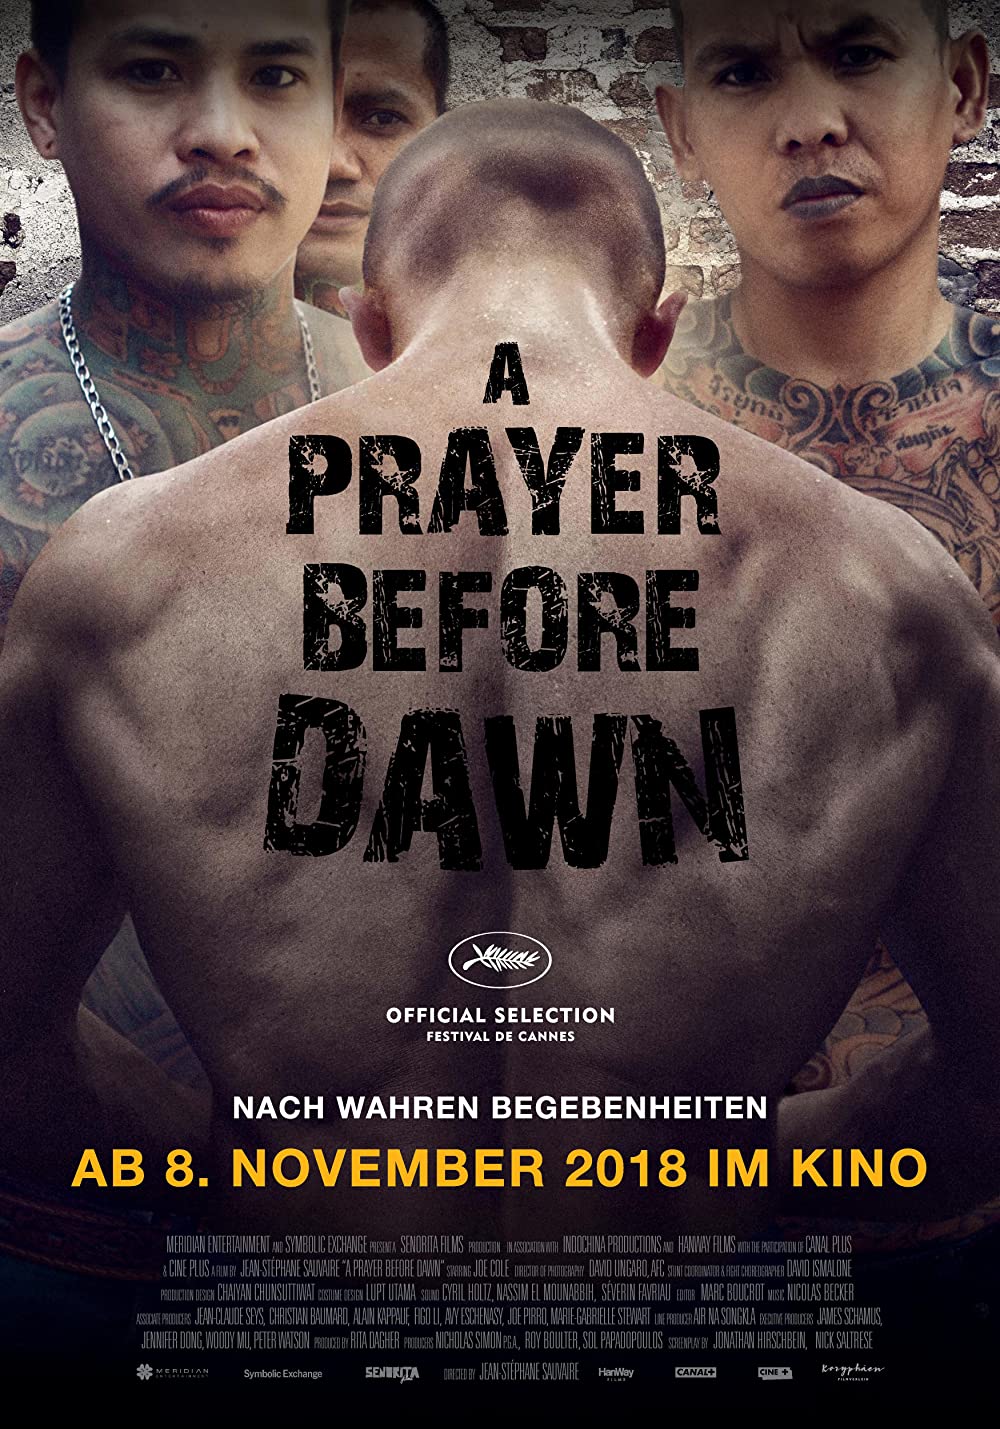 Filmbeschreibung zu A Prayer Before Dawn